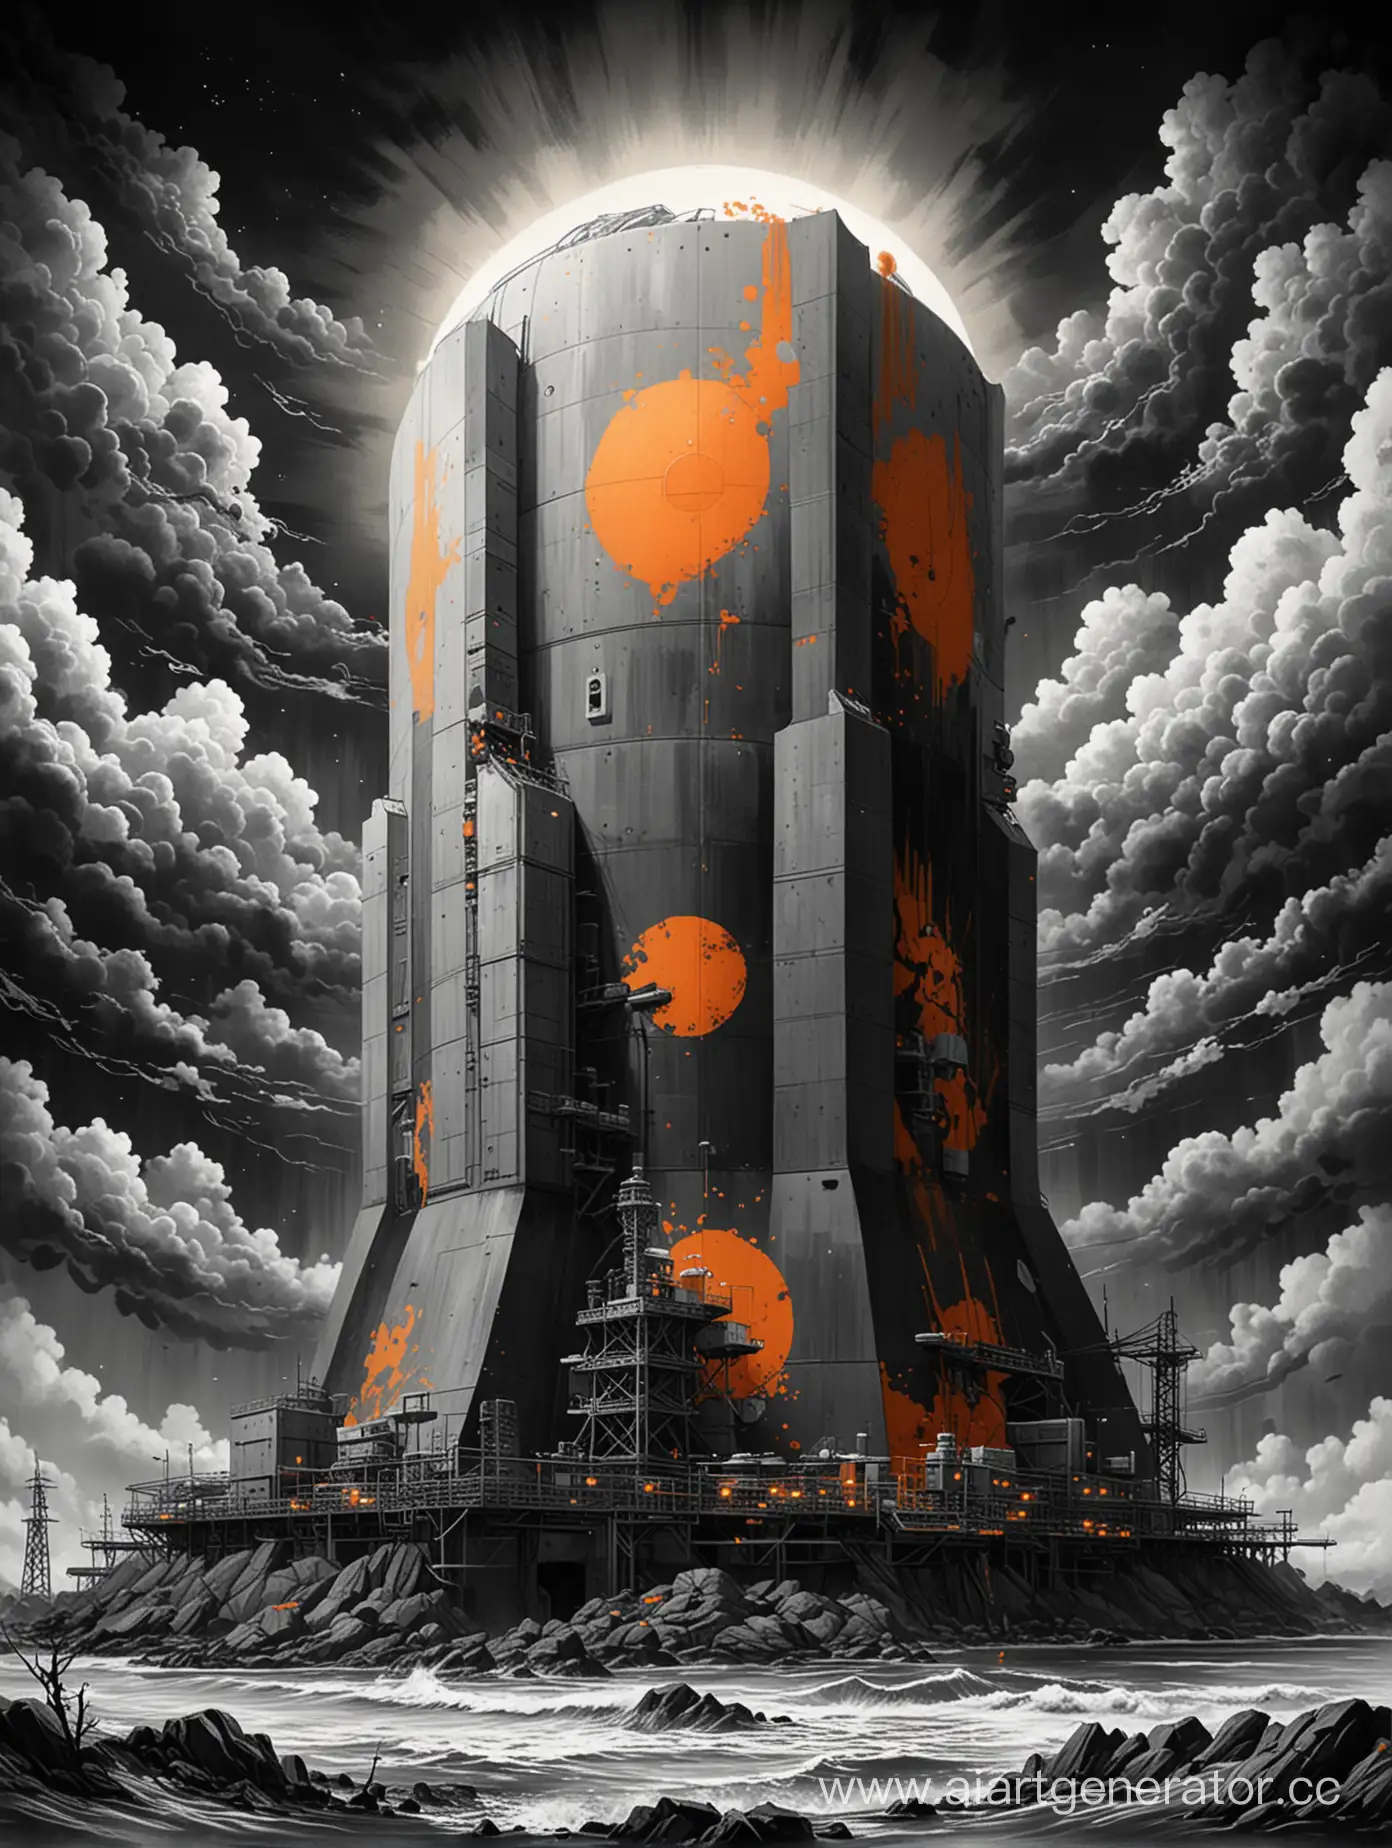 ядерный реактор, используй только черный белый серый и оранжевый цвета, в стиле японских картин